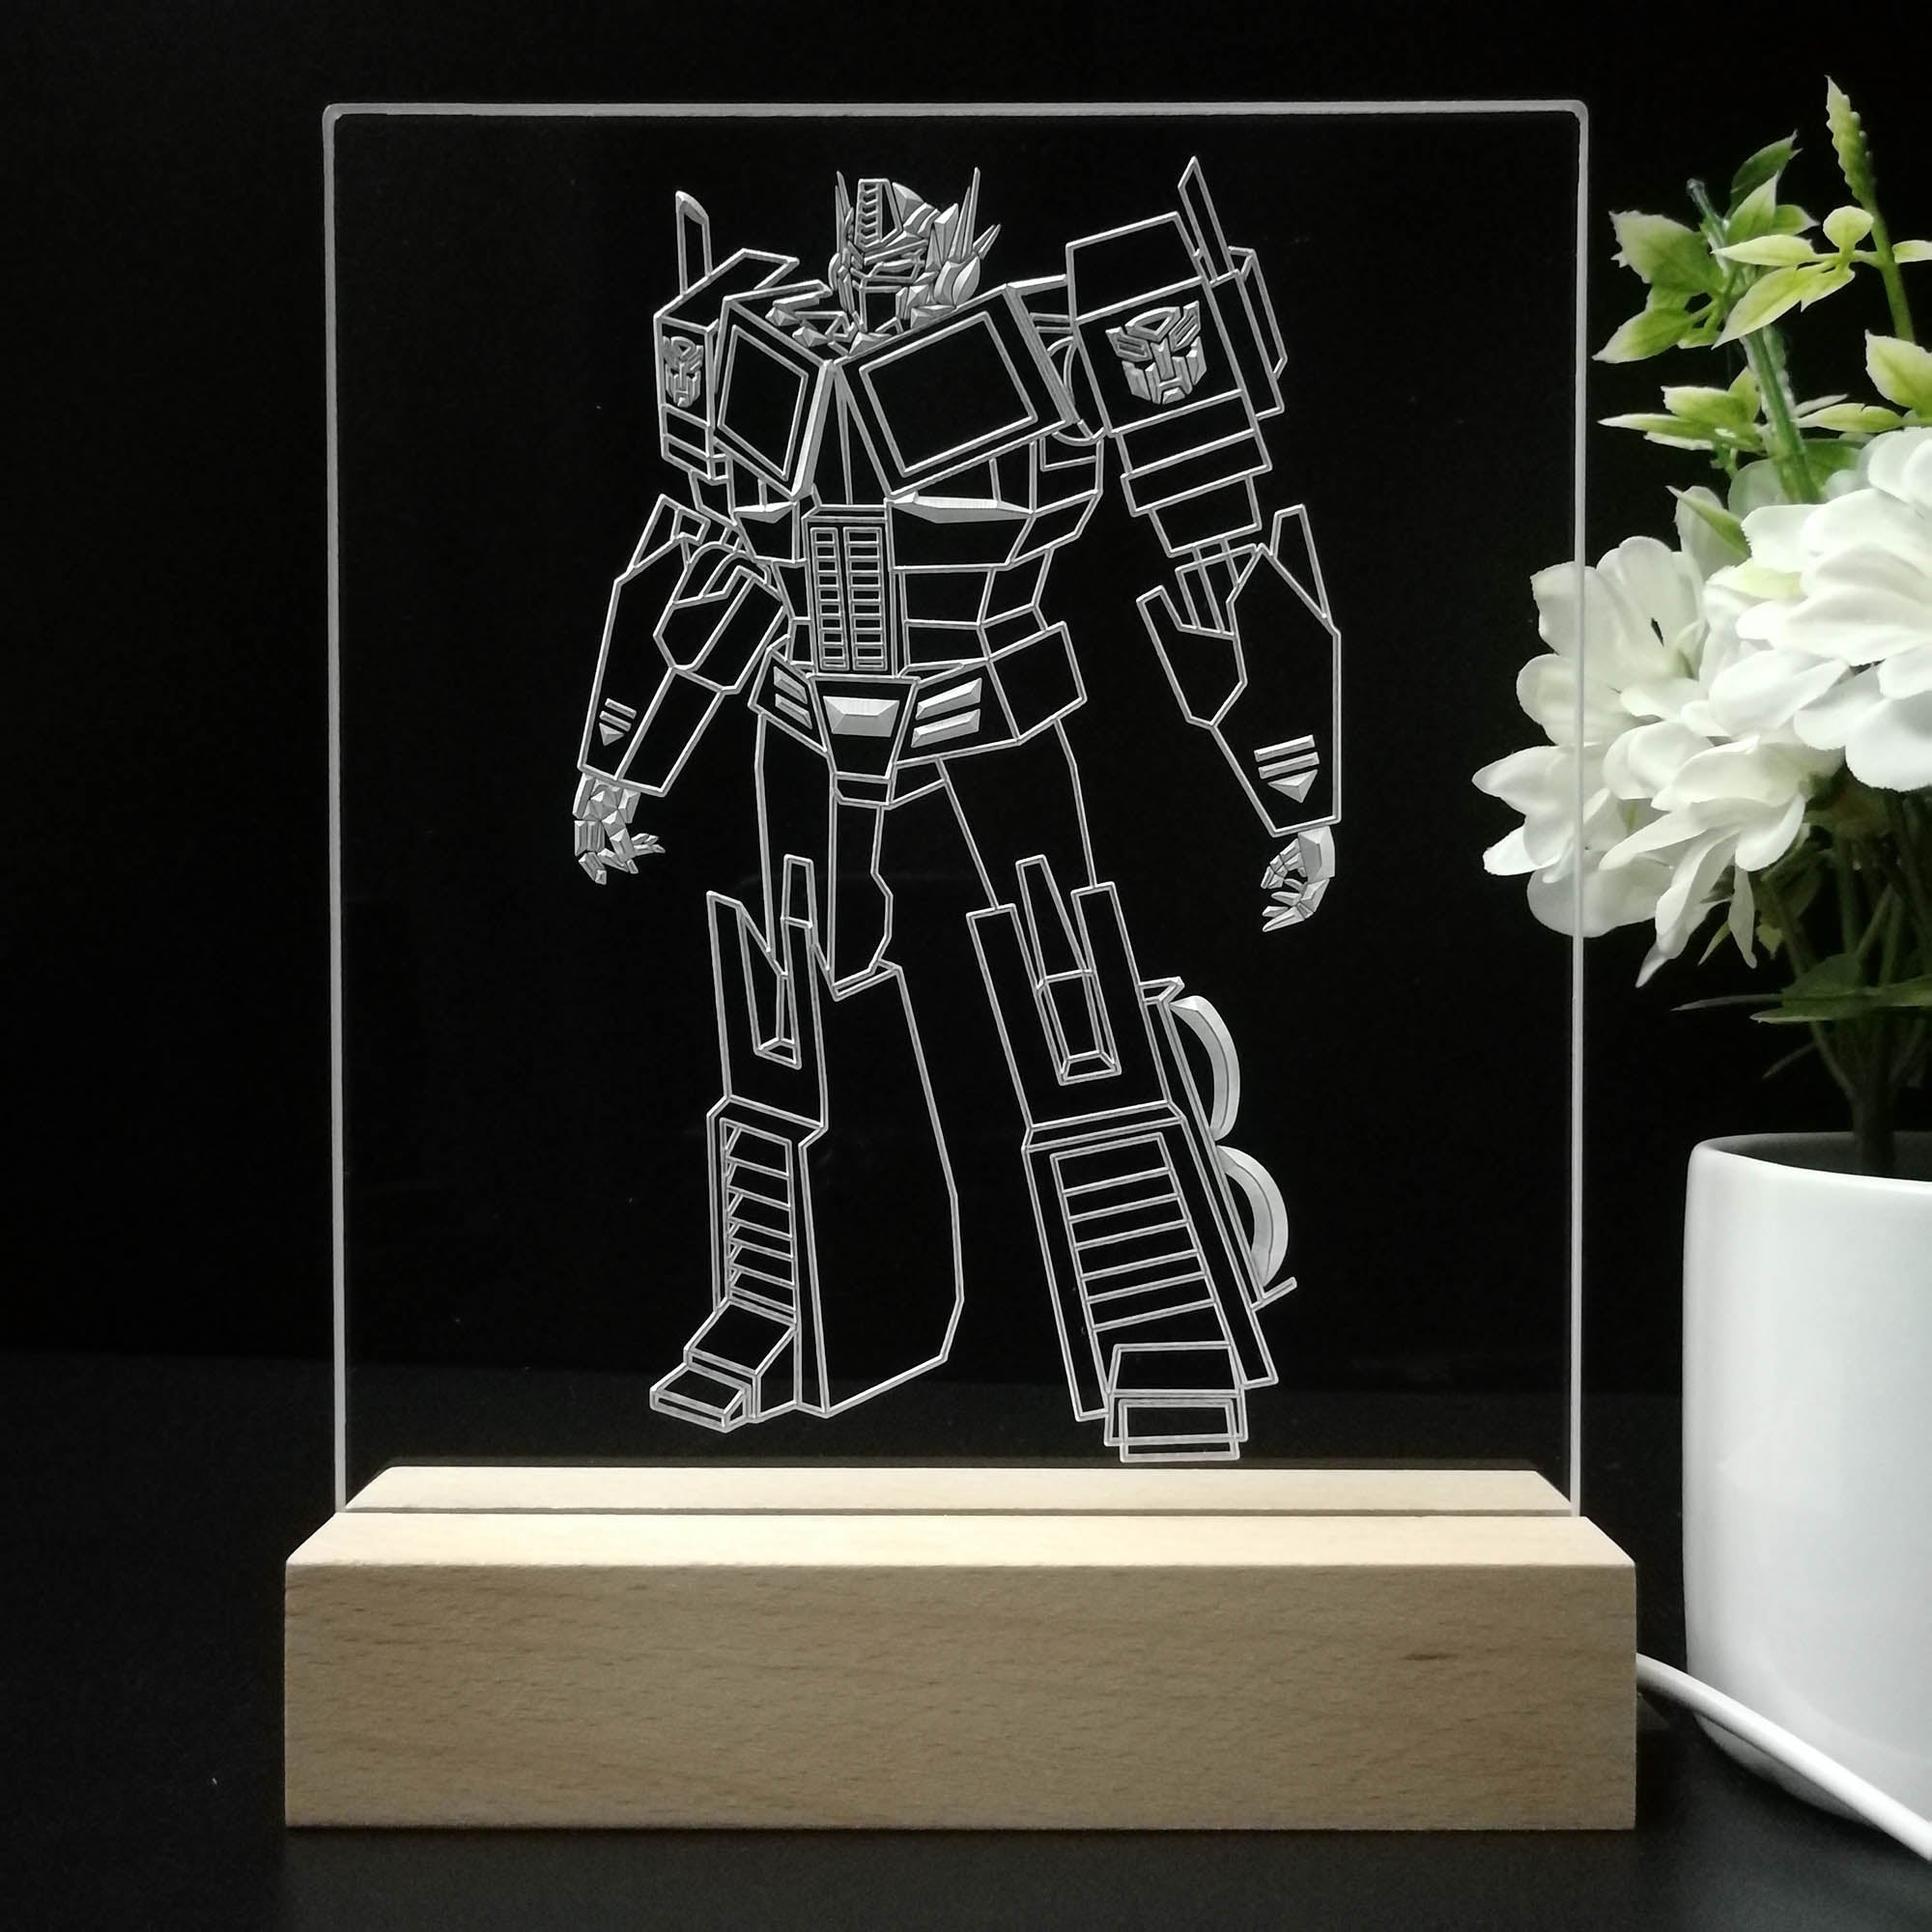 Transformers optimus prime Game Room LED Sign Lamp Display